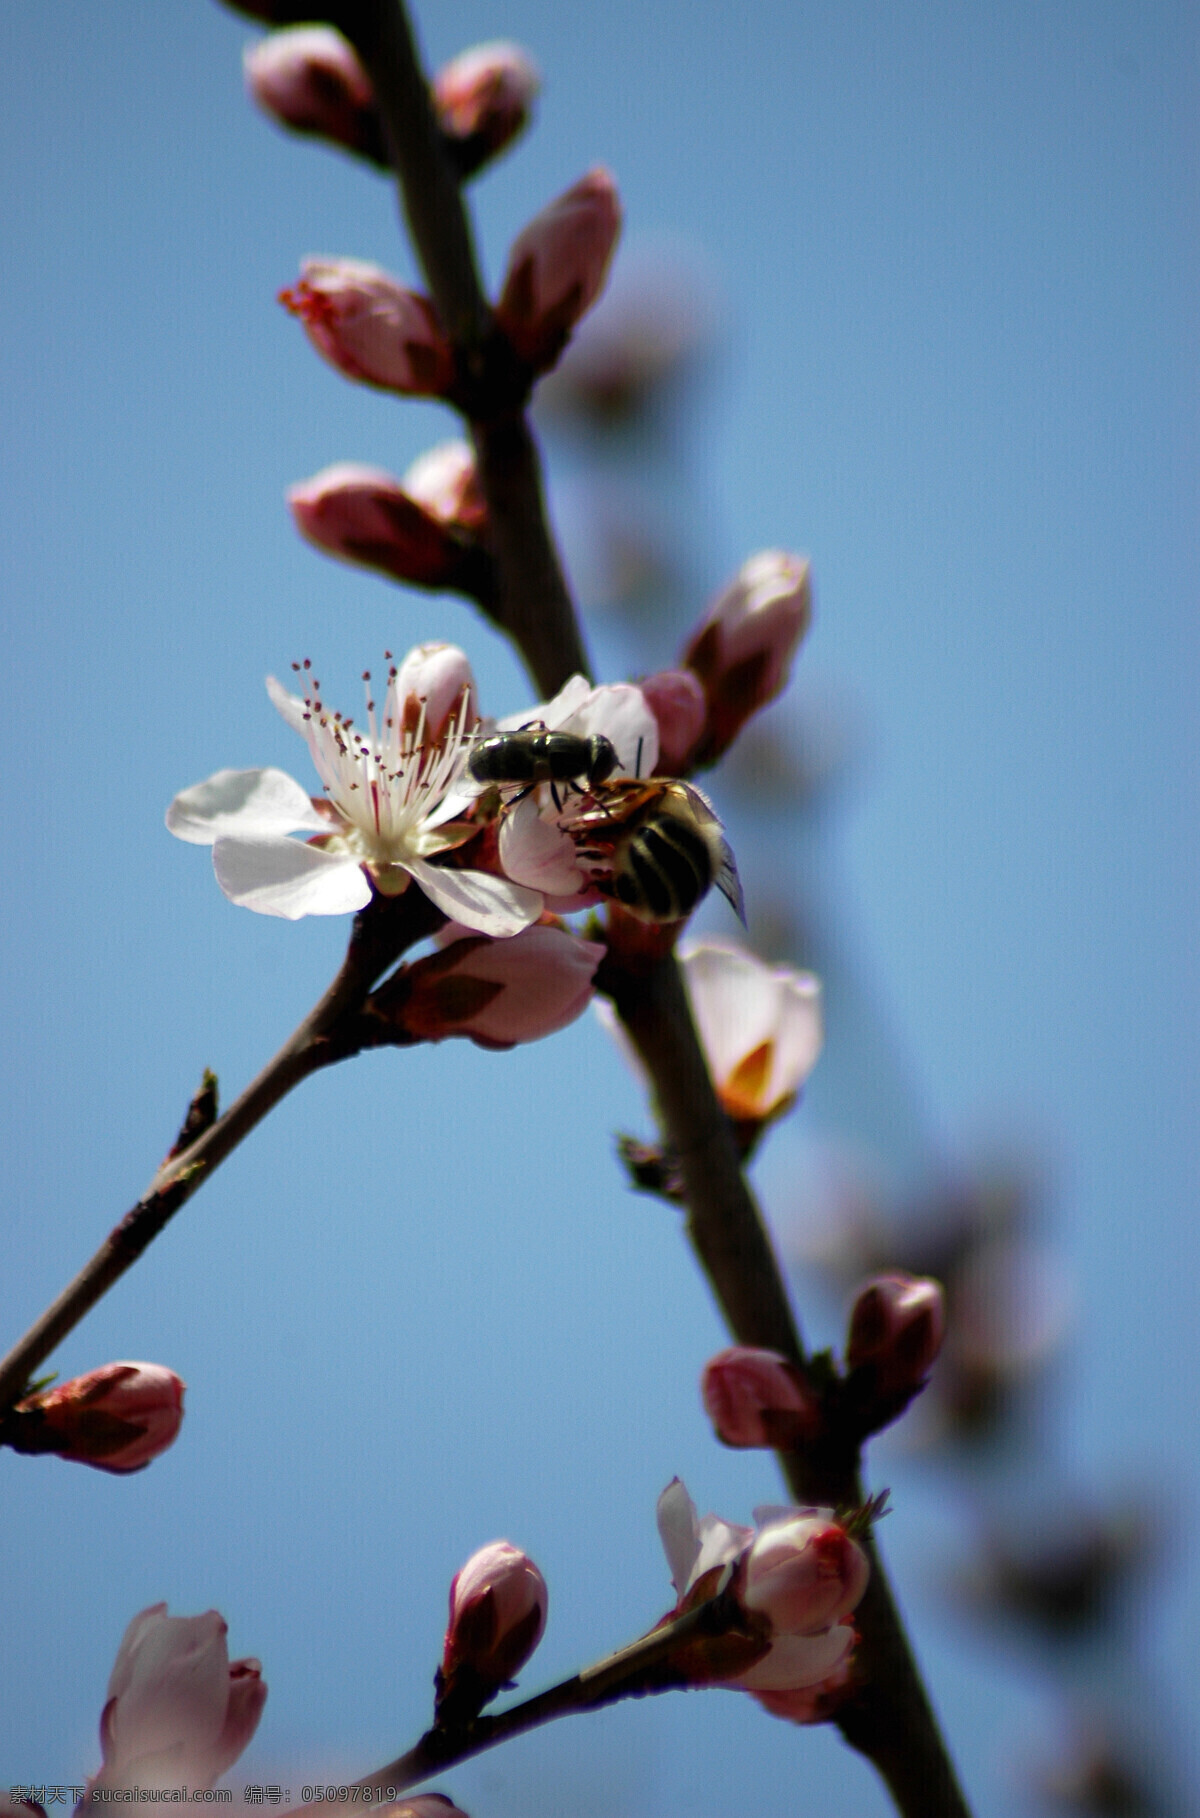 昆虫 蜜蜂采蜜 生物世界 公园 里 蜜蜂 杏花 杏花开了 春天的蜜蜂 花朵微距 蜜蜂微距 两只蜜蜂 昆虫和花